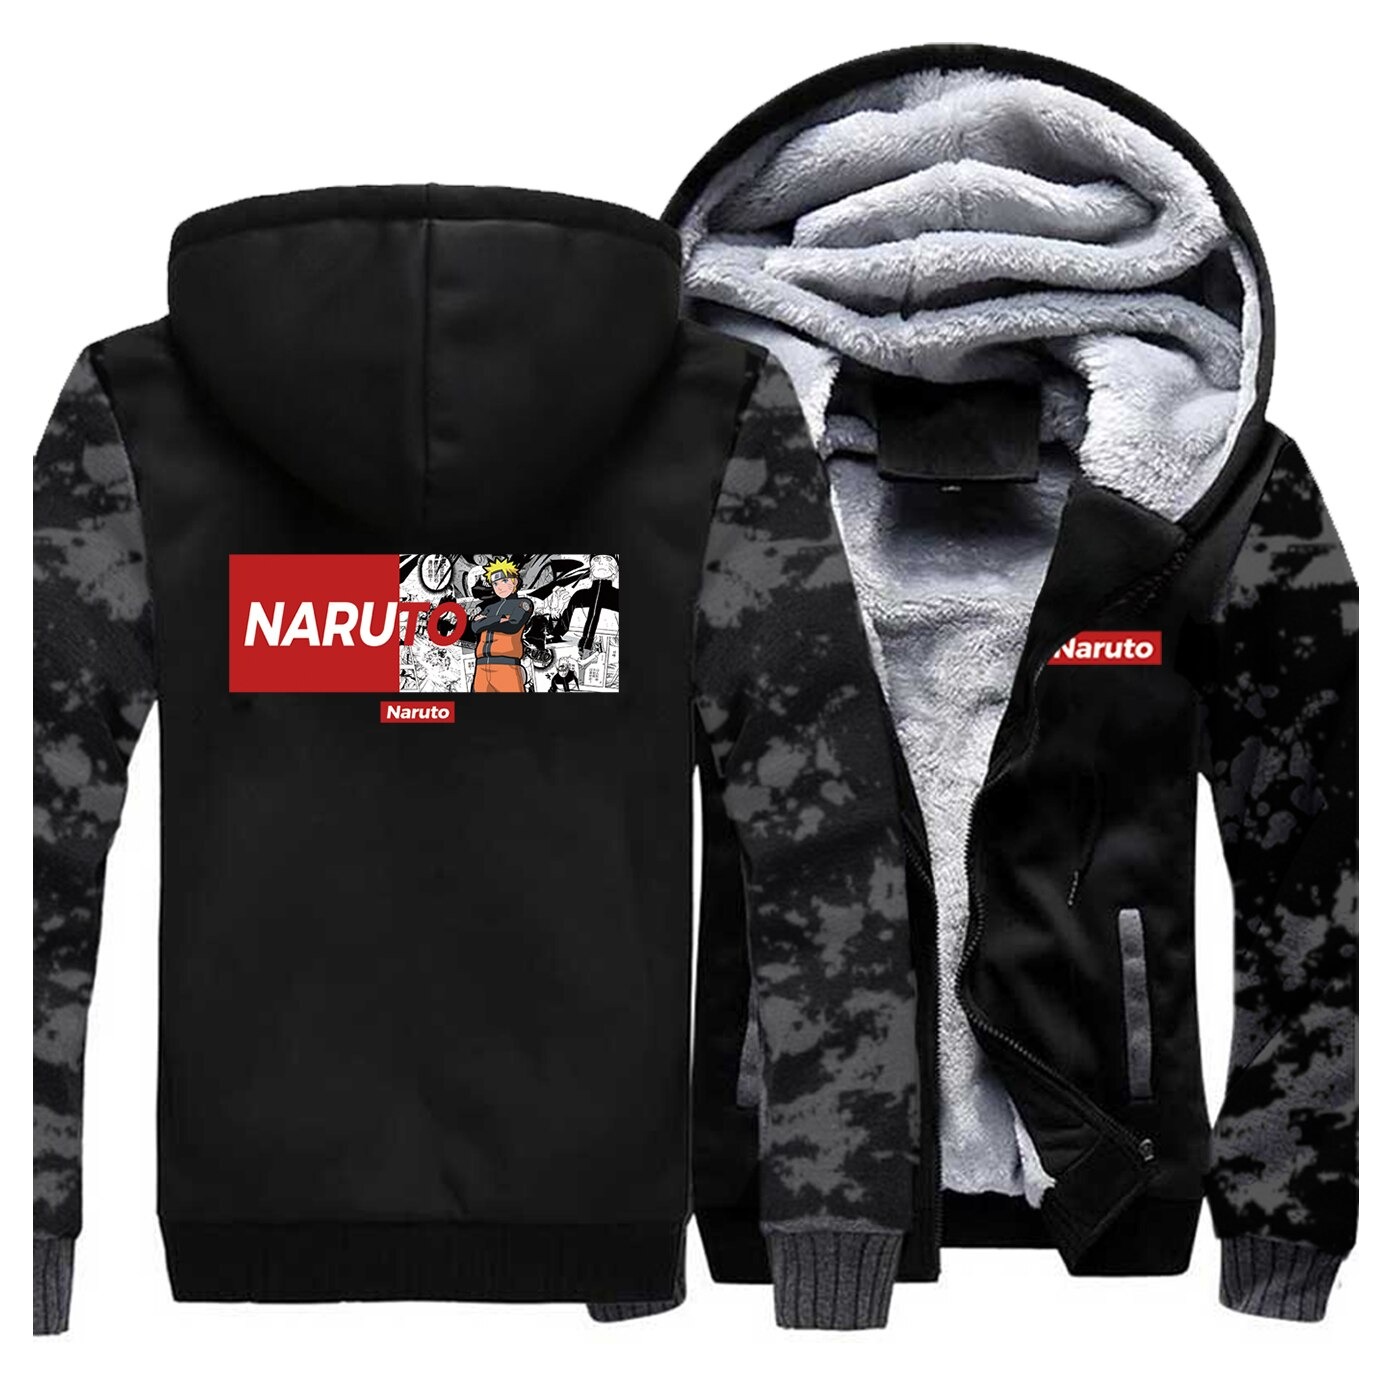 Uzumaki Naruto Winter Jacket - Naruto Merch Shop